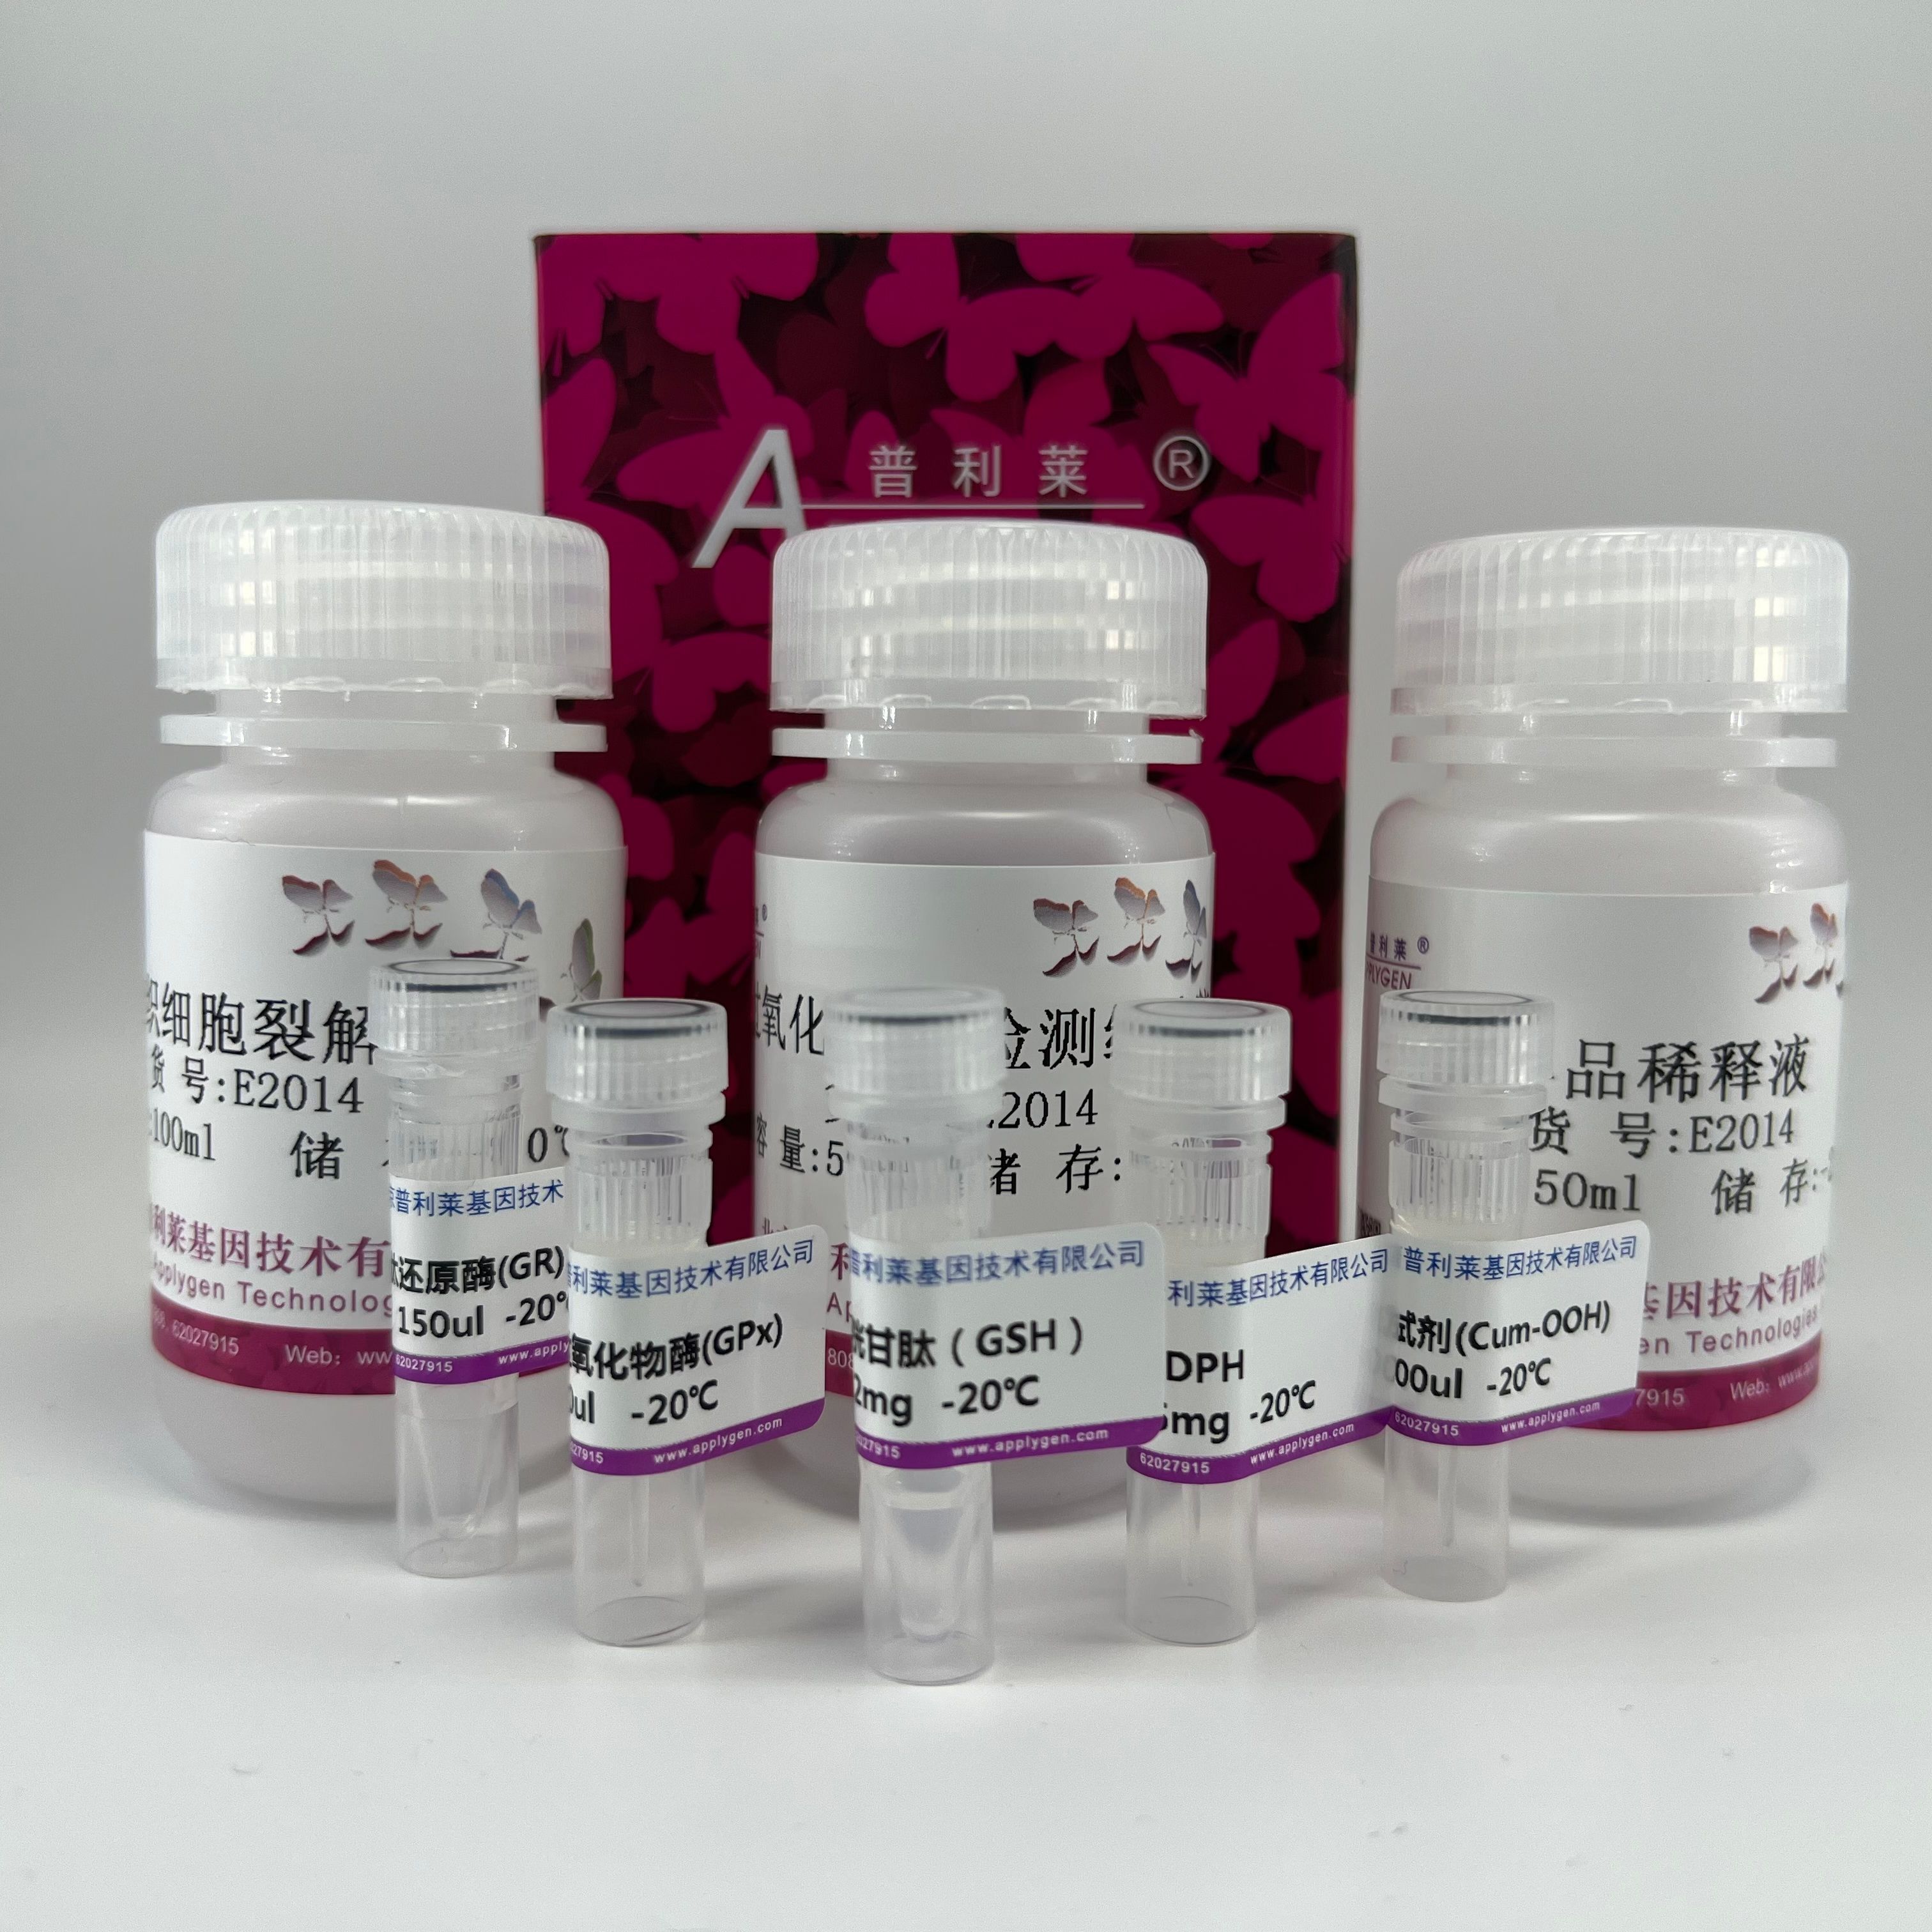 组织细胞总谷胱甘肽过氧化物酶检测试剂盒  E2014  厂家直销，提供OEM定制服务，大包装更优惠 